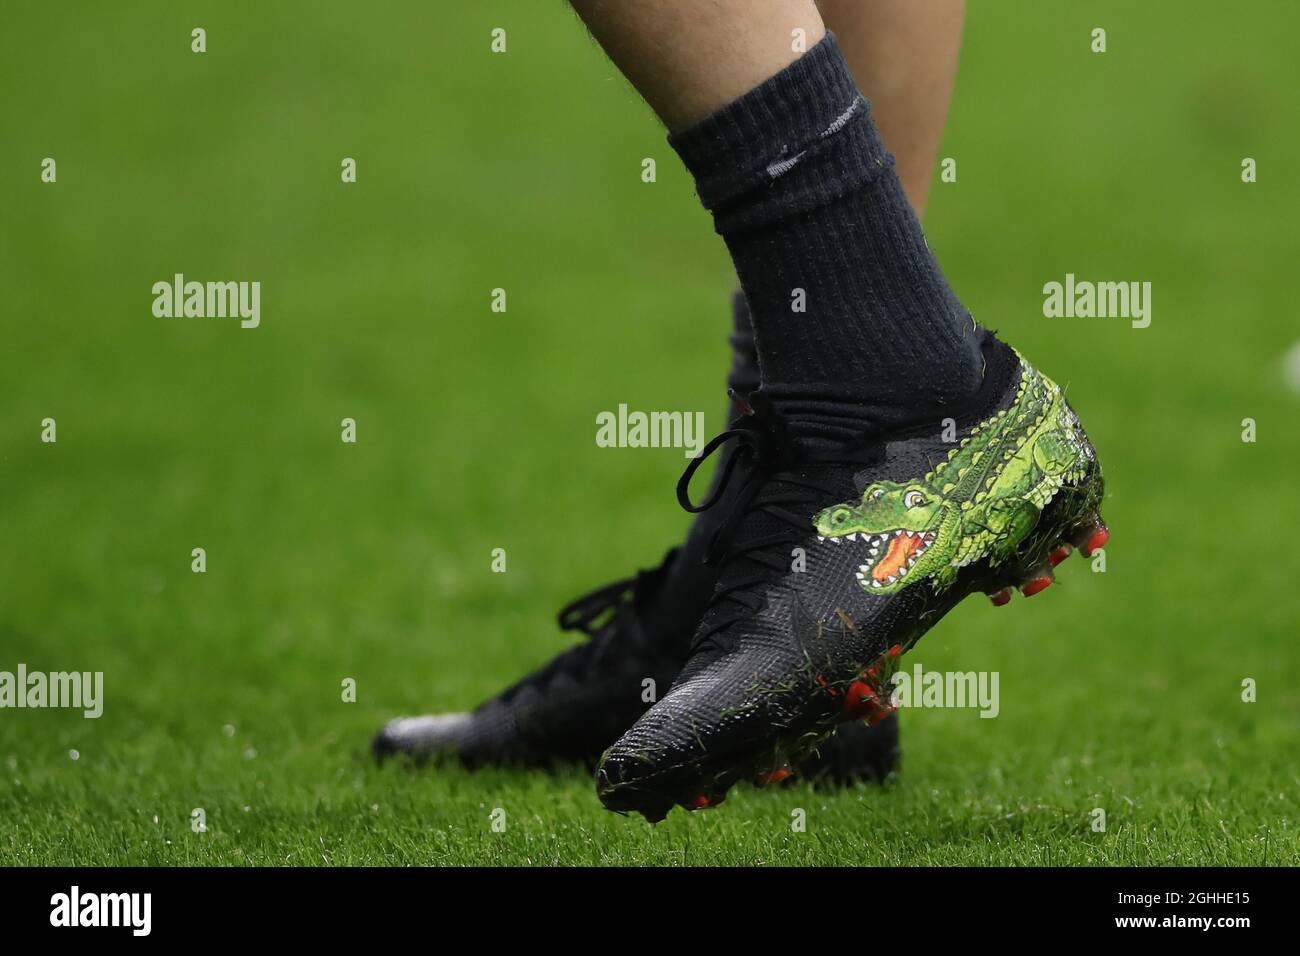 Une image d'un crocodile est vue sur les chaussures de football de Marcelo  Brozovic d'Internazionale pendant le match de Coppa Italia à Giuseppe  Meazza, Milan. Date de la photo : 2 février